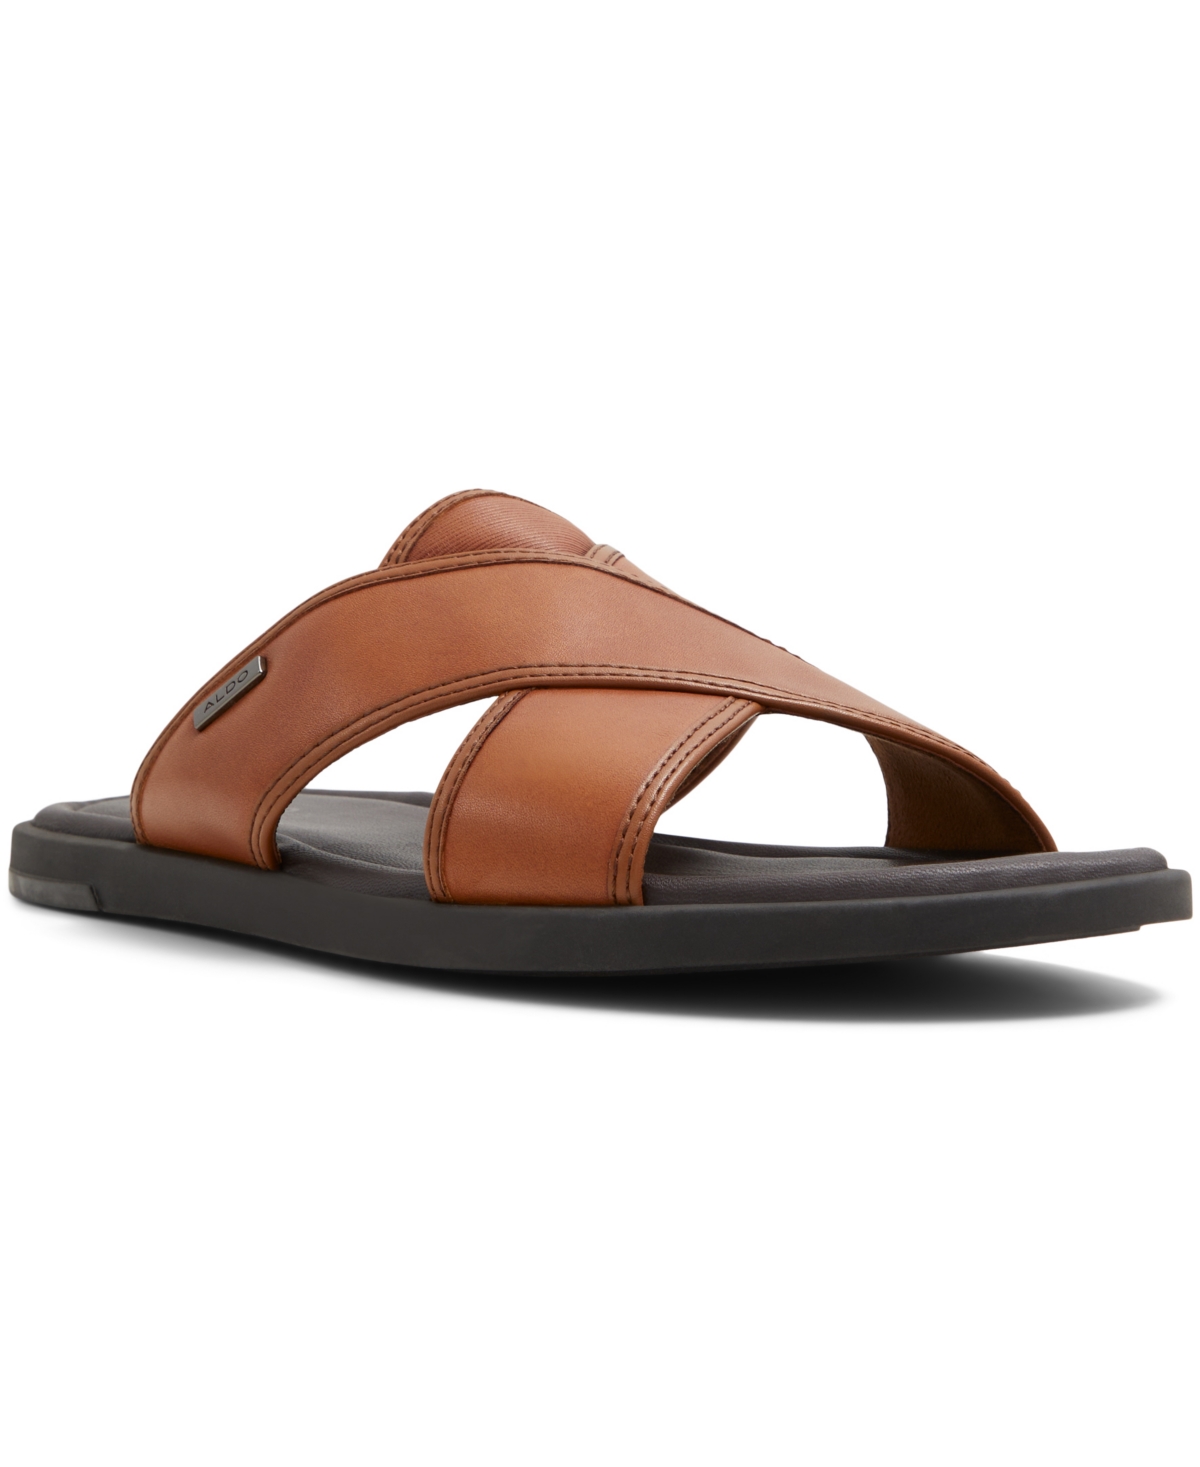 Men's Olino Flat Sandals - Cognac